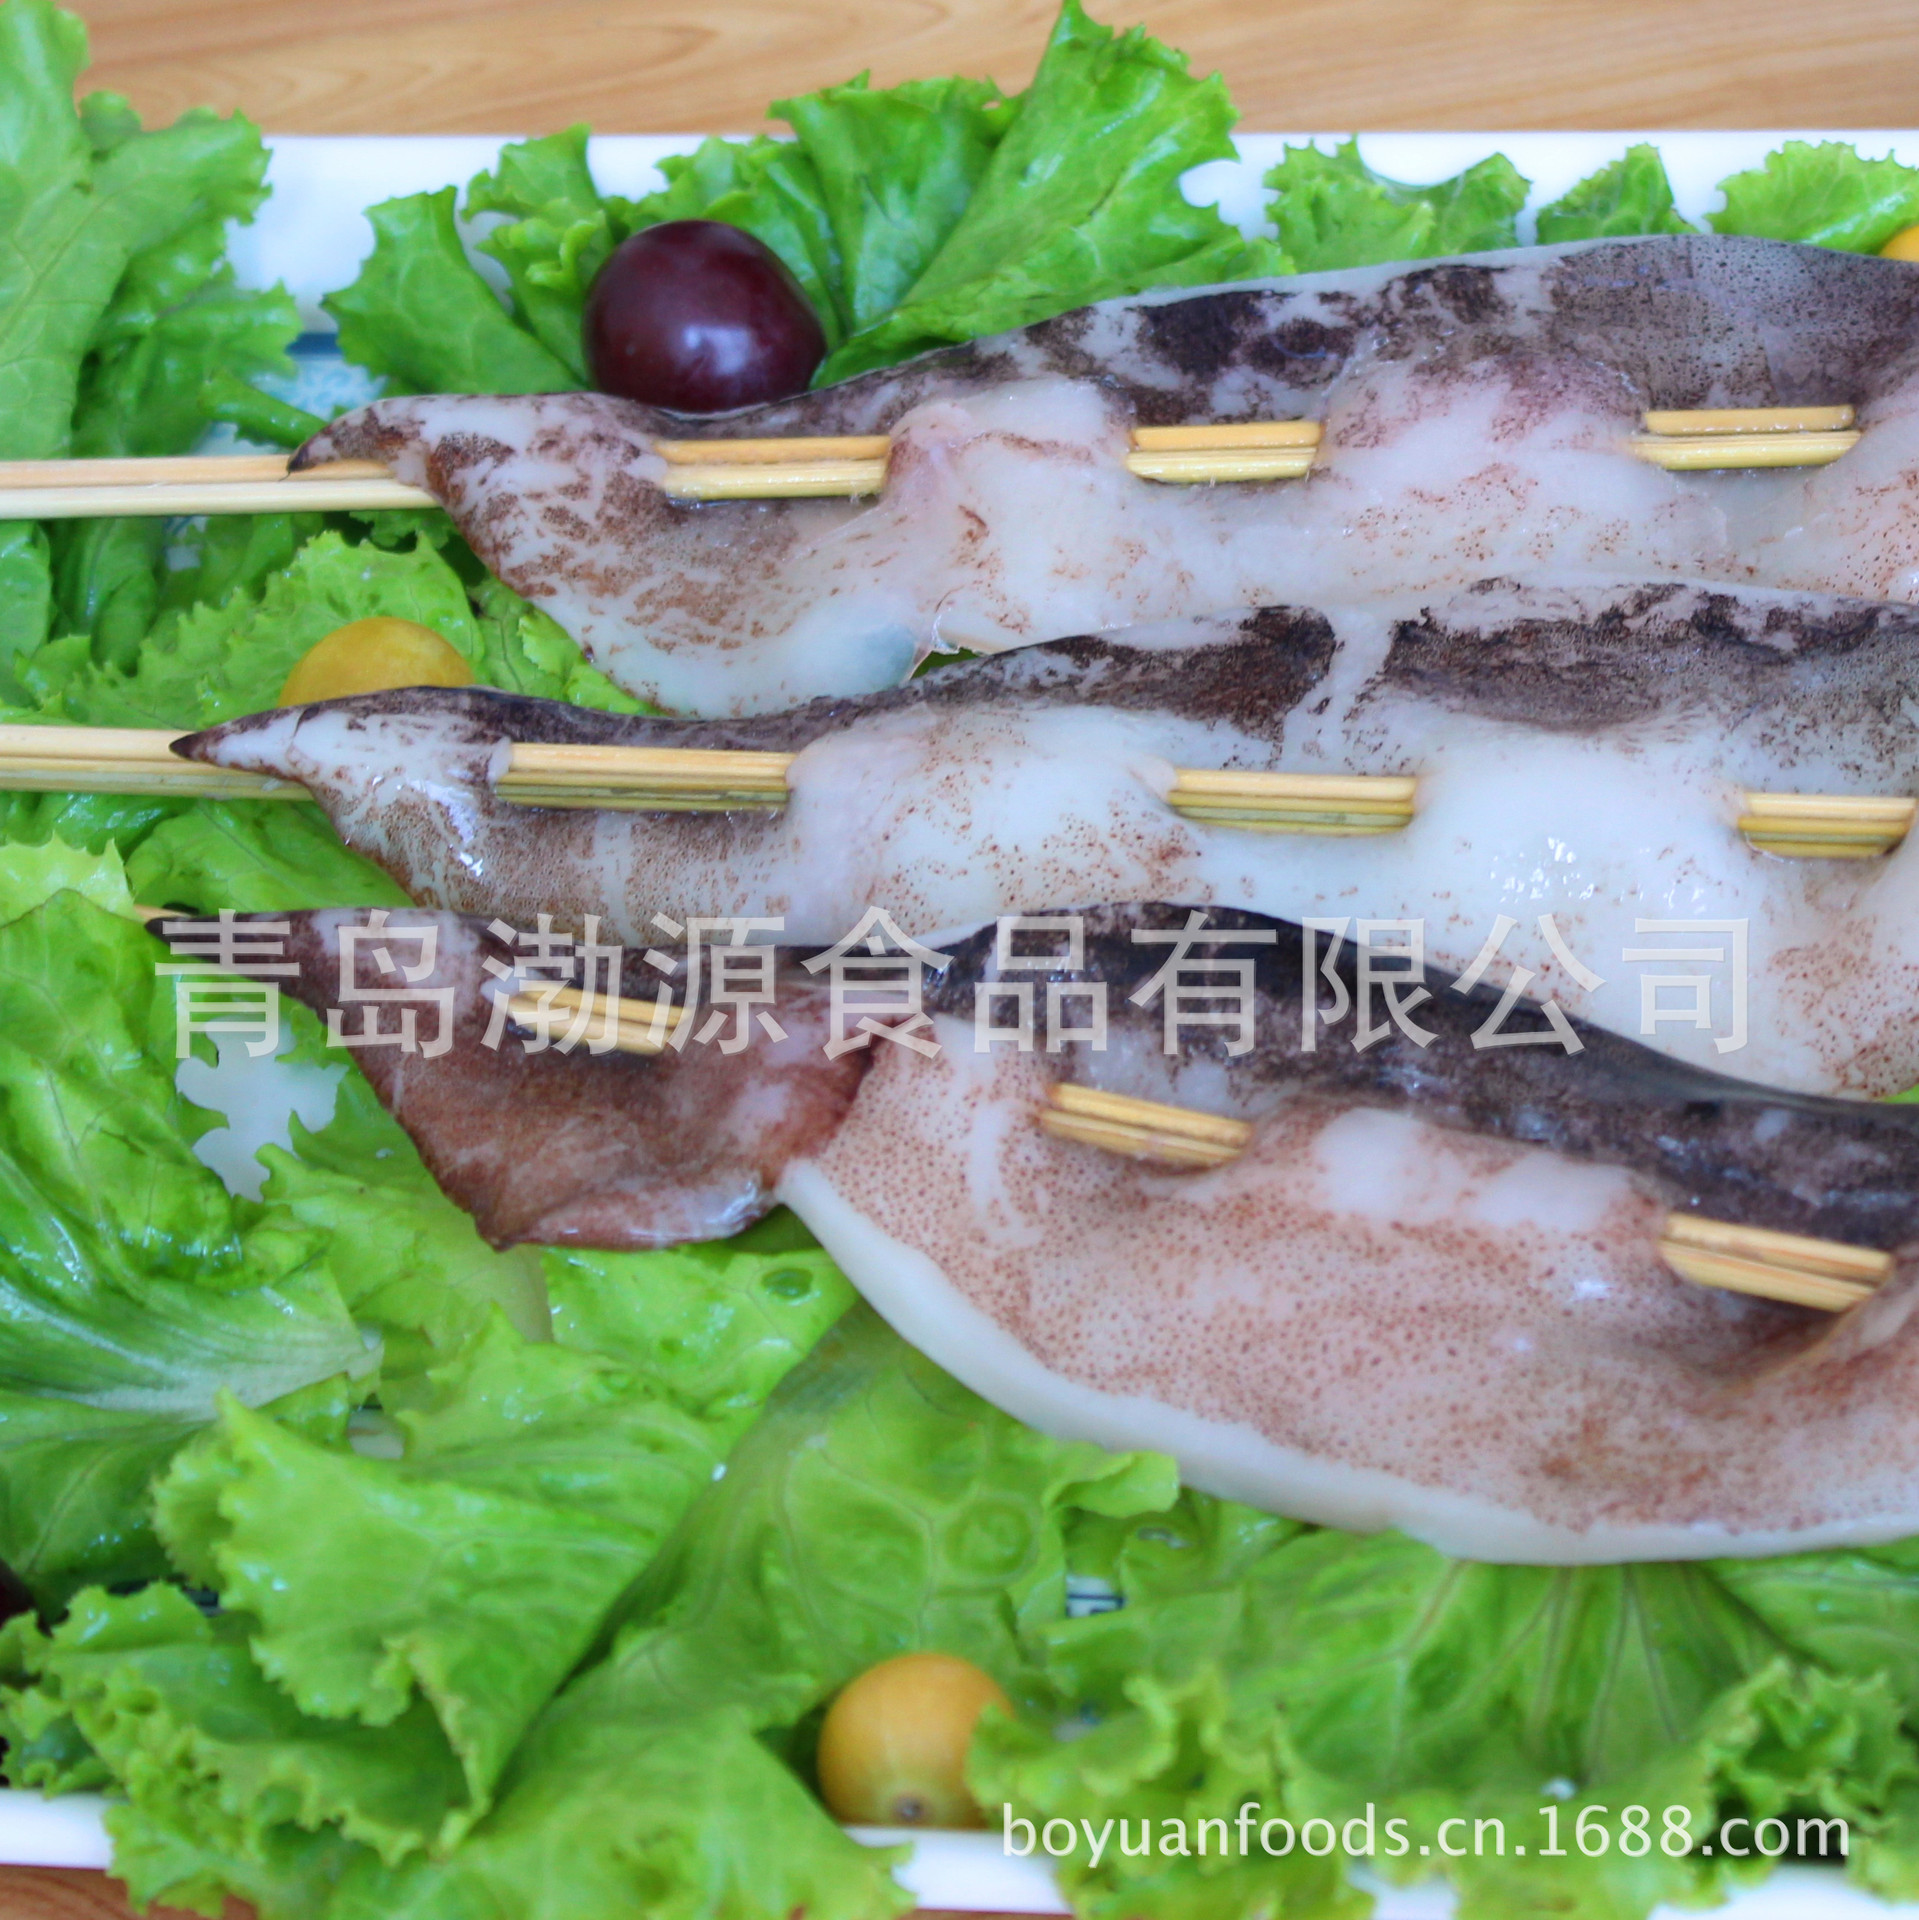 厂家直销 100g北朝鲜鱿鱼板串,原汁原味,烧烤铁板鱿鱼串